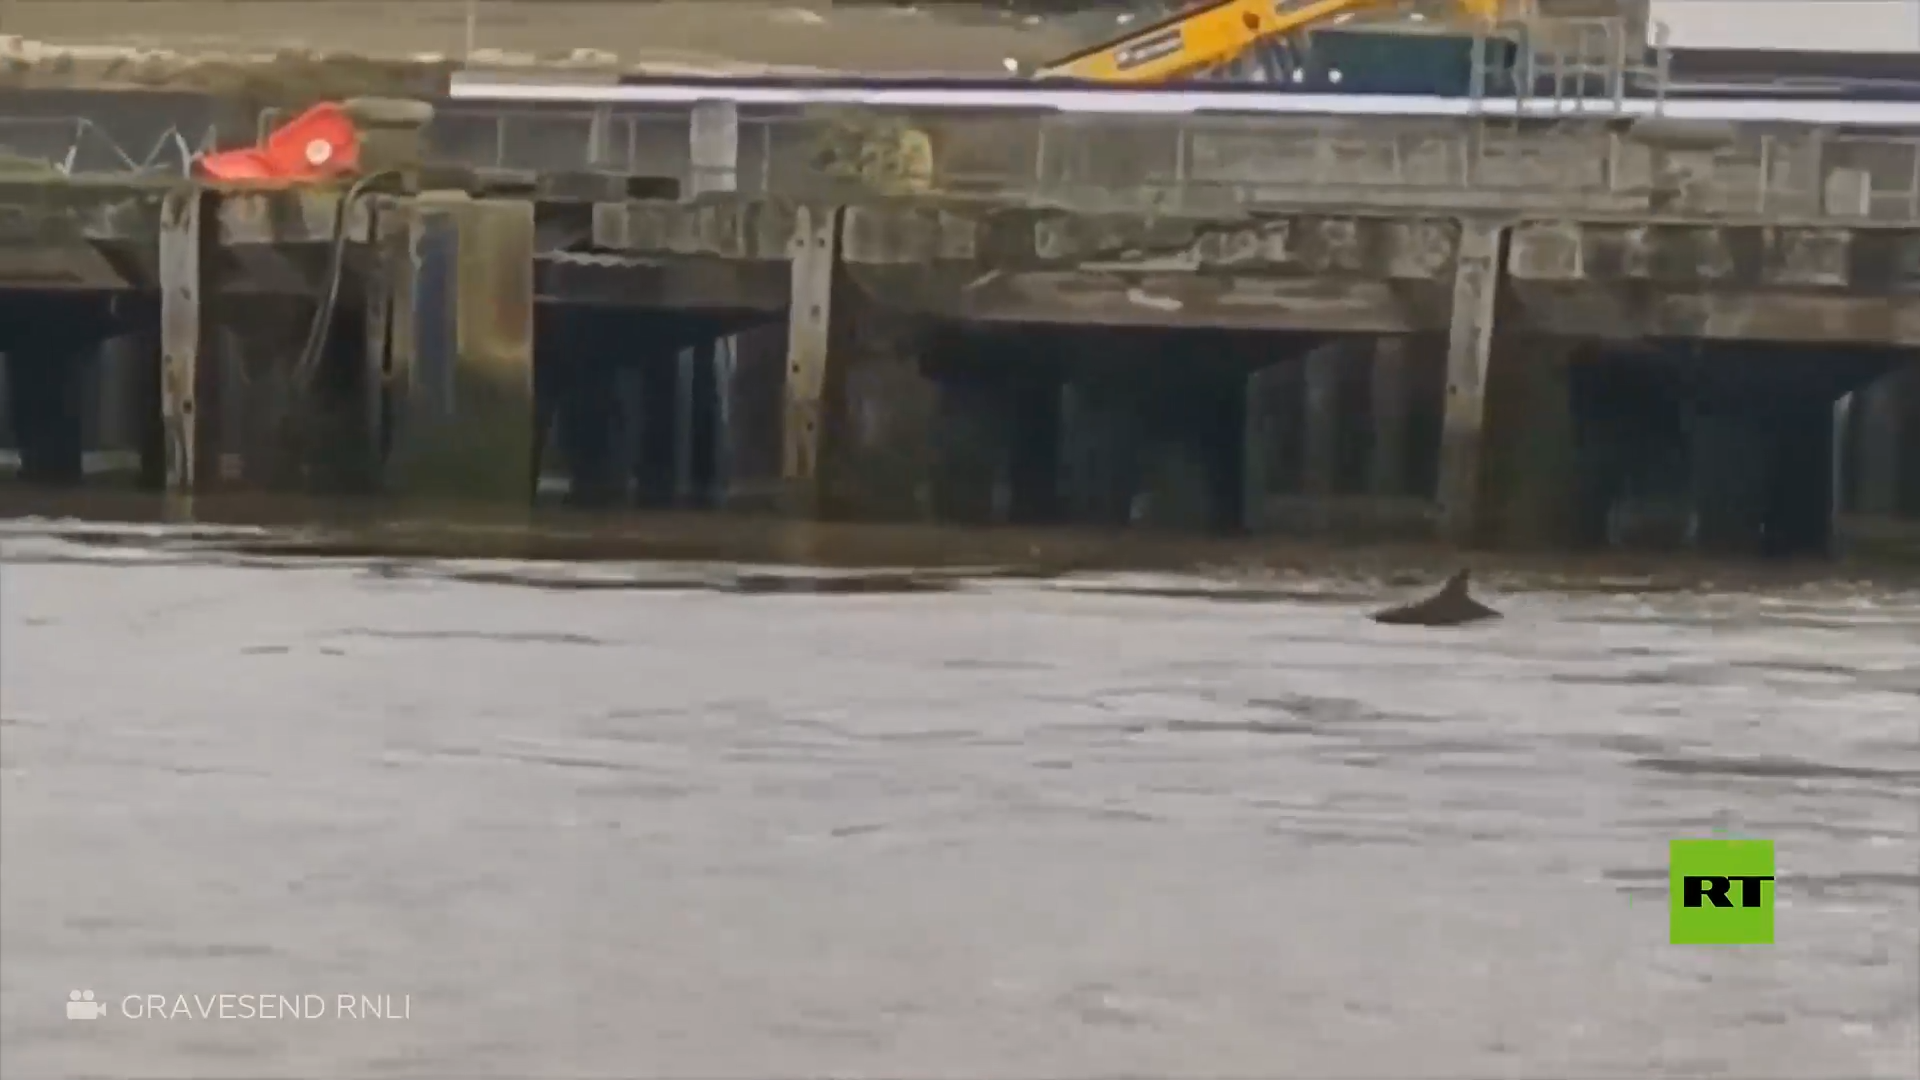 رصد 3 دلافين تطفو في نهر التايمز في بريطانيا